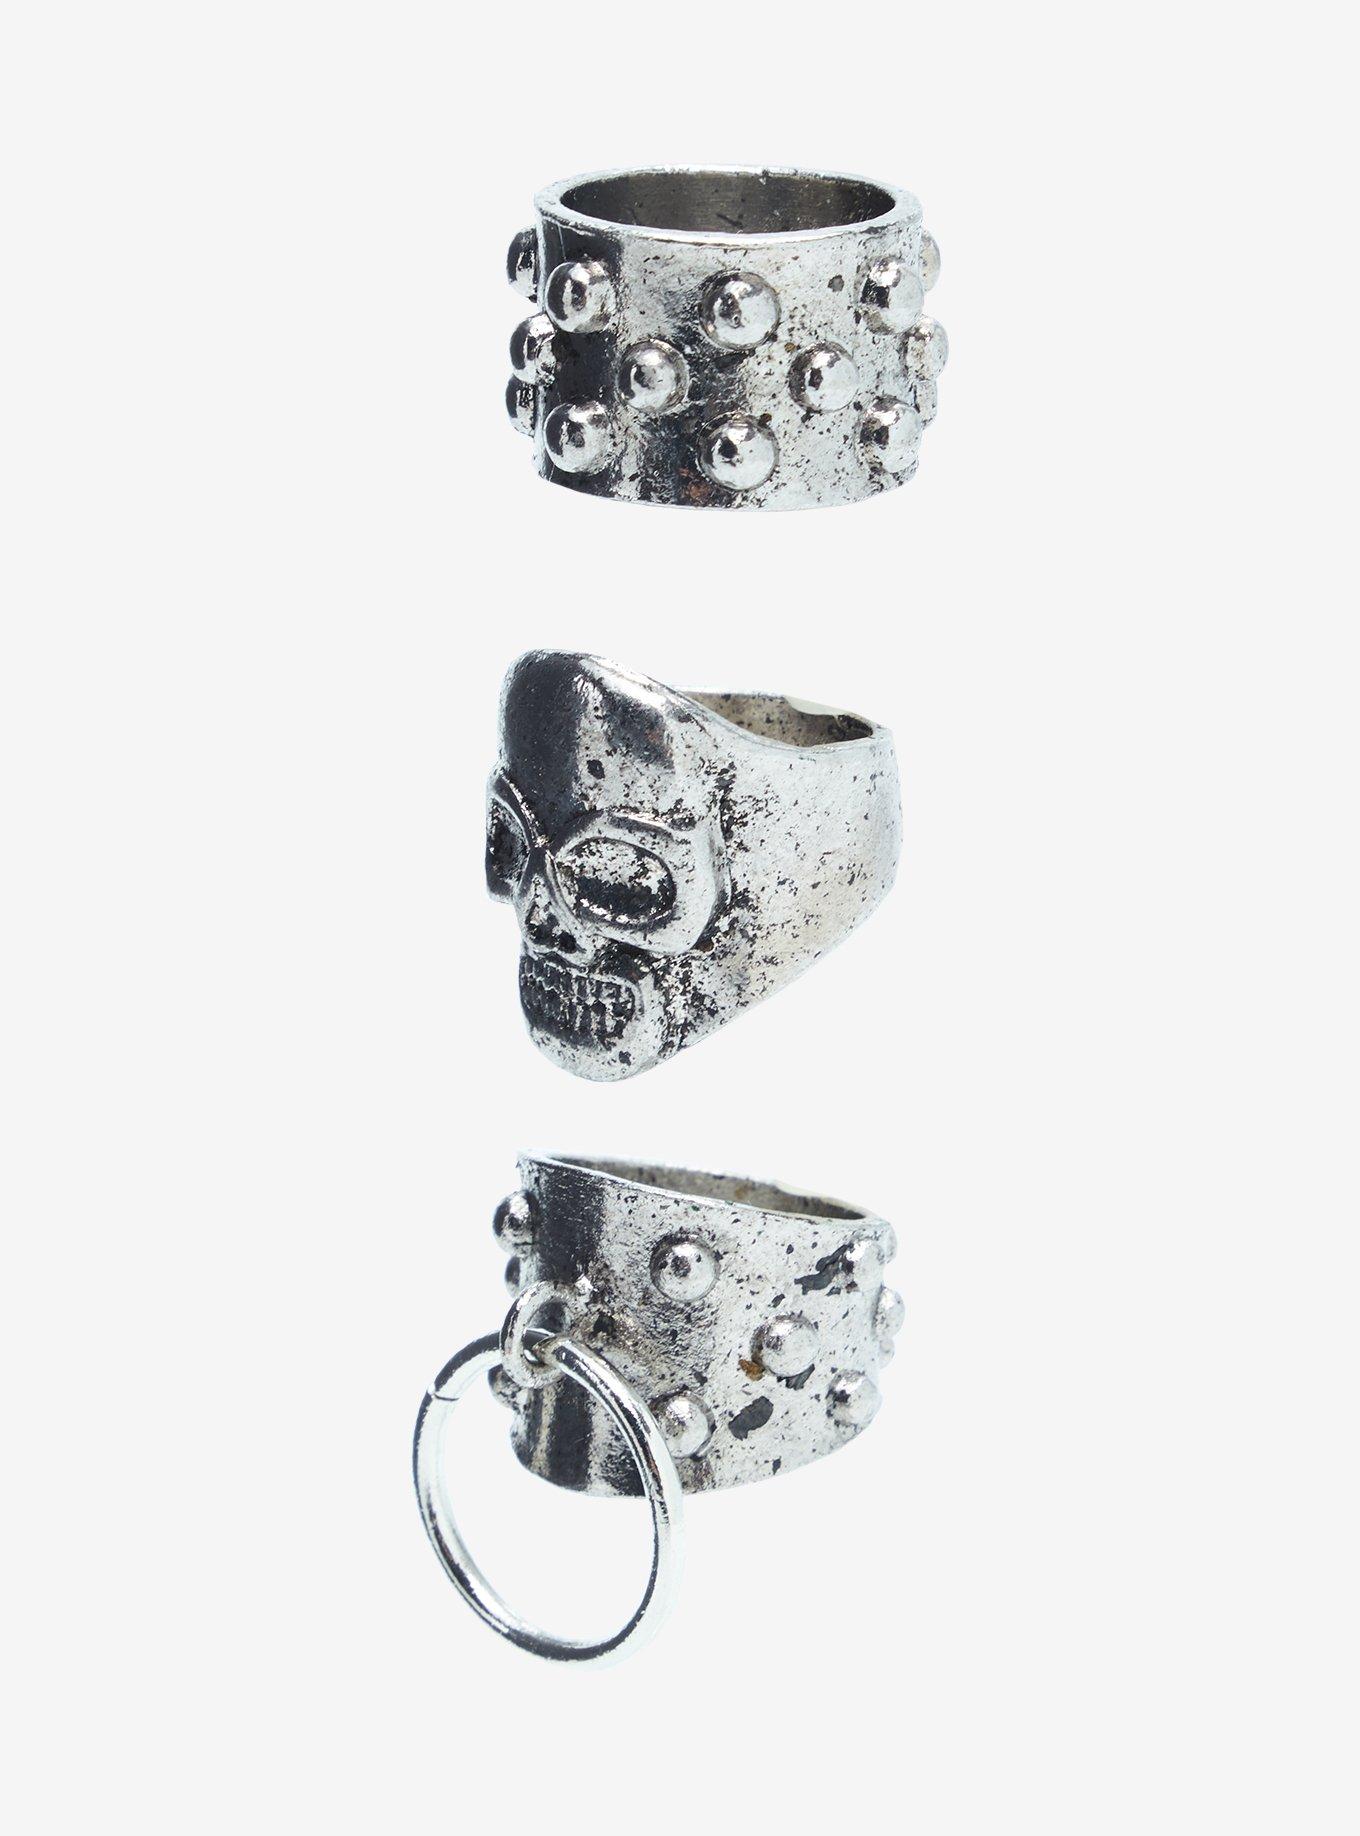 Social Collision® Punk Skull Ring Set